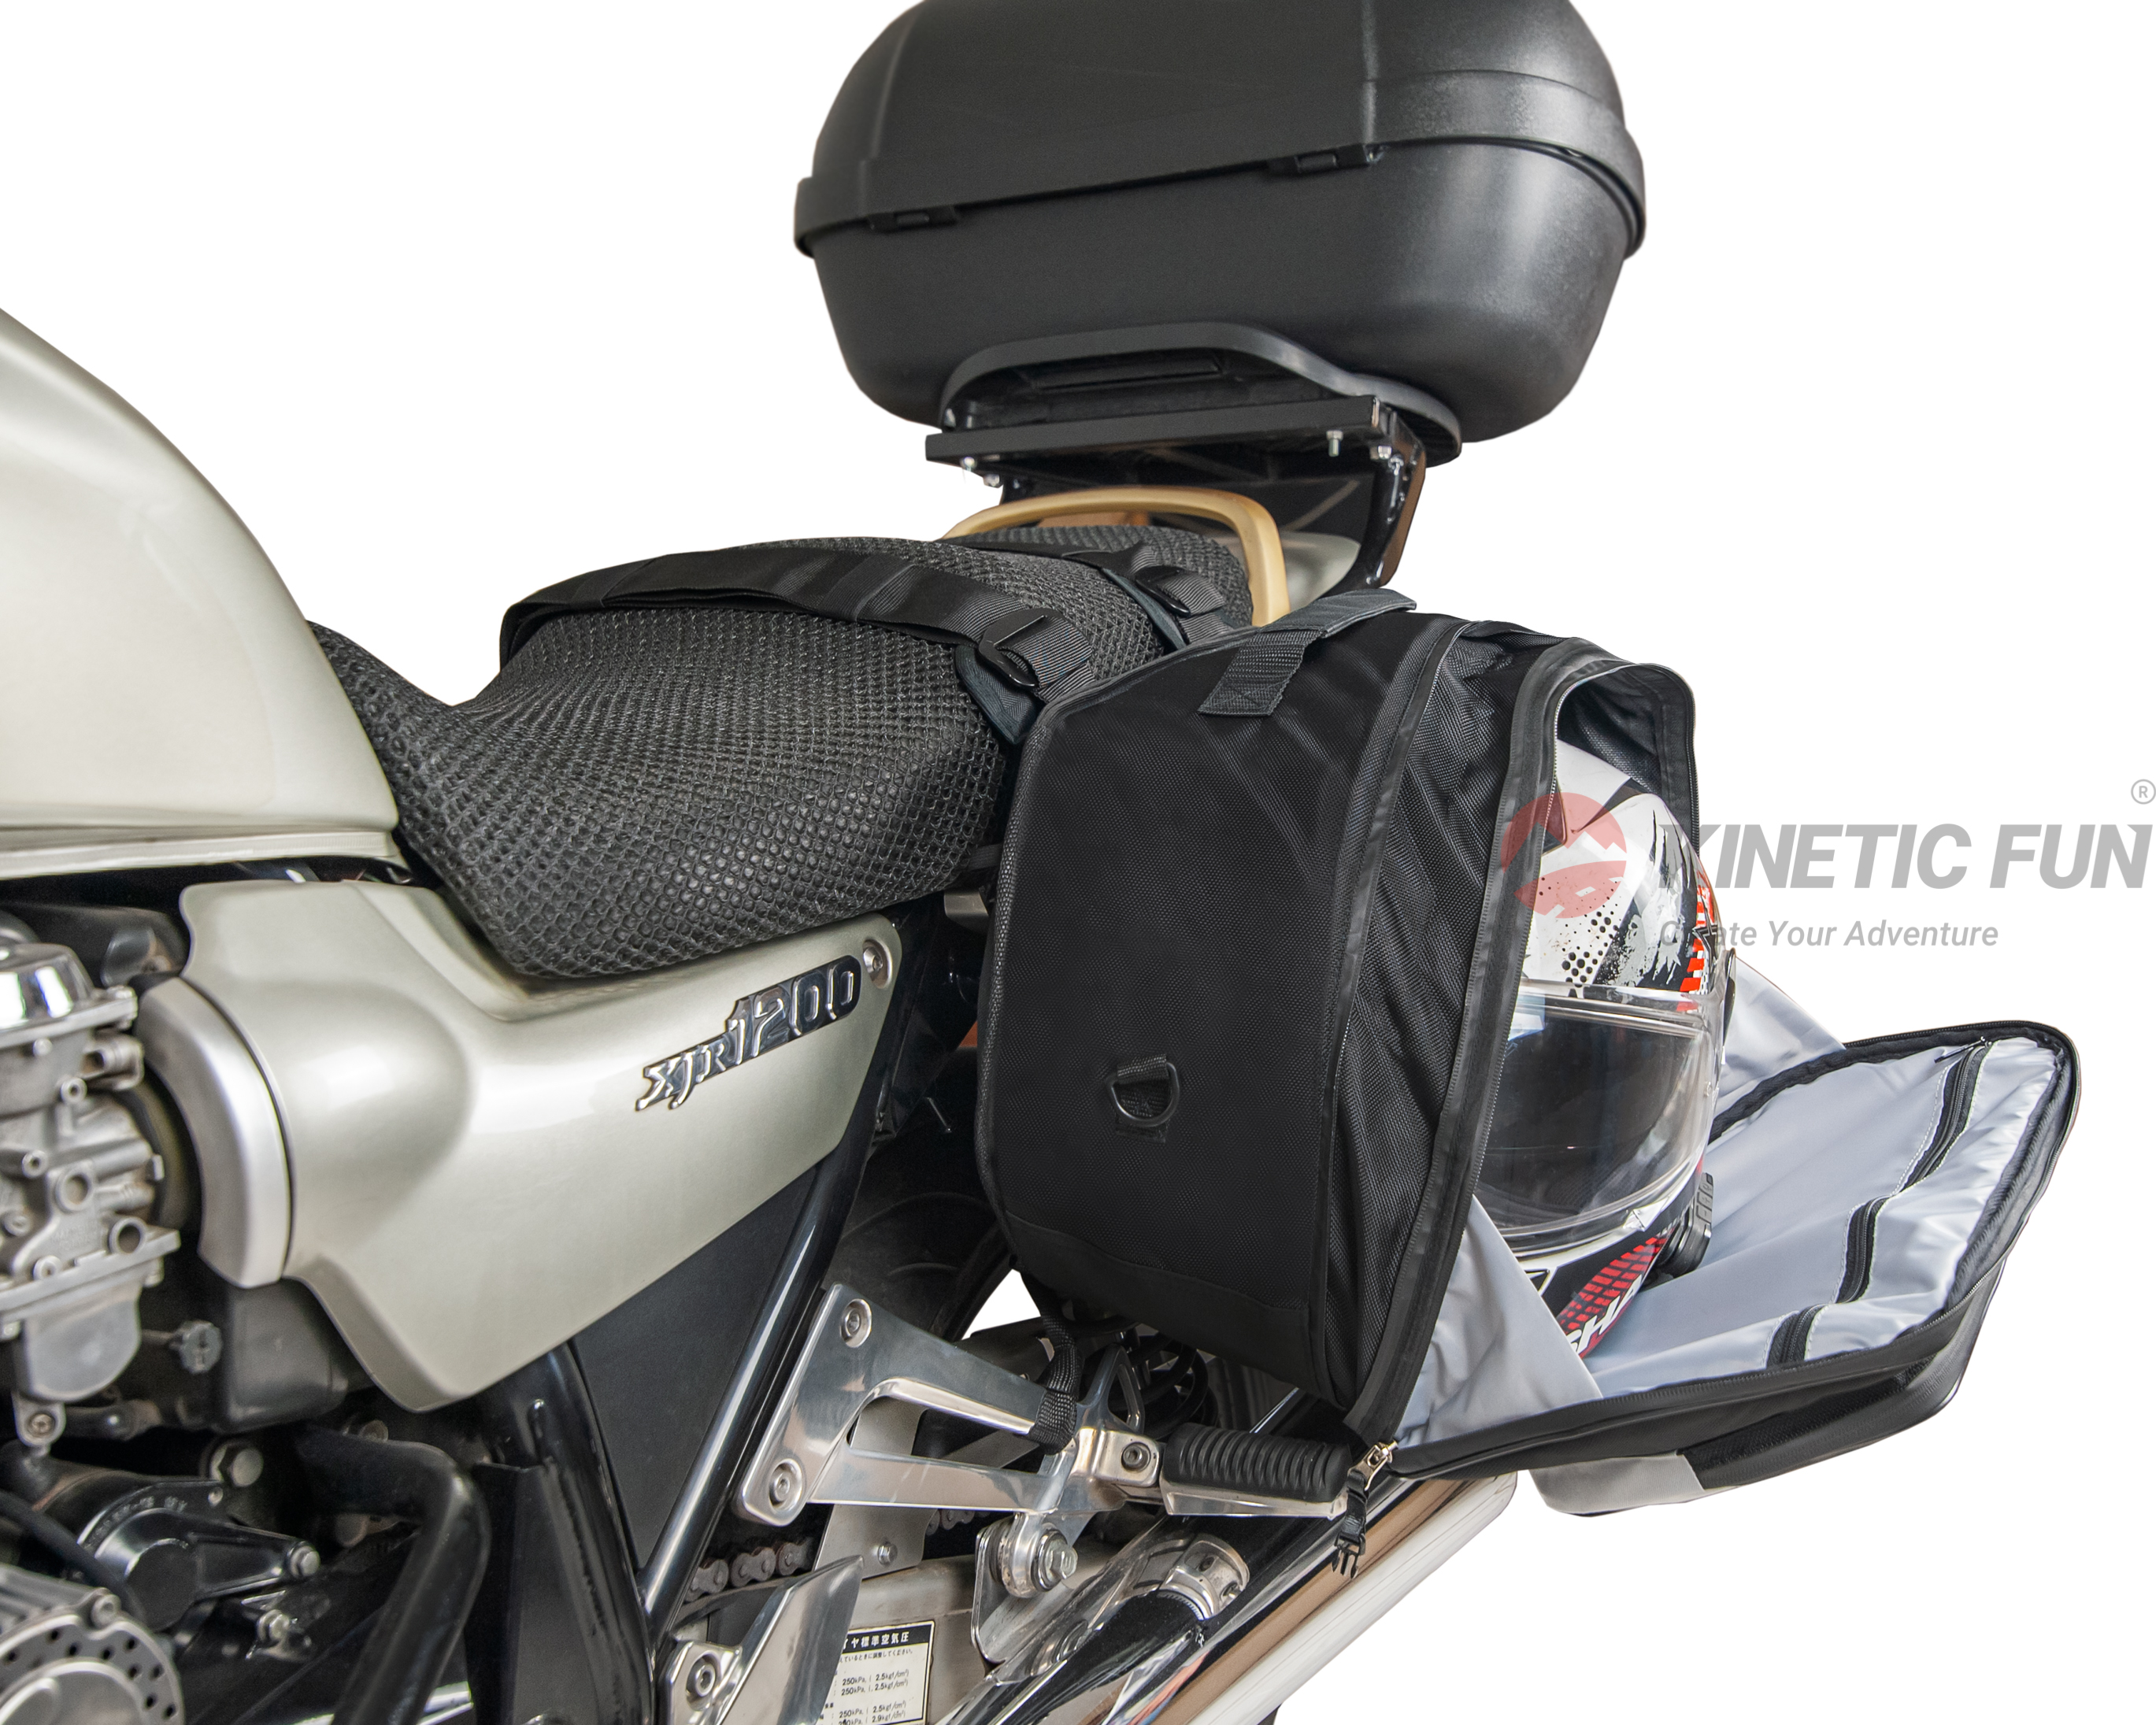 Боковые сумки для мотоцикла - Модель: Road Evo (пара), объём 34-46 литров